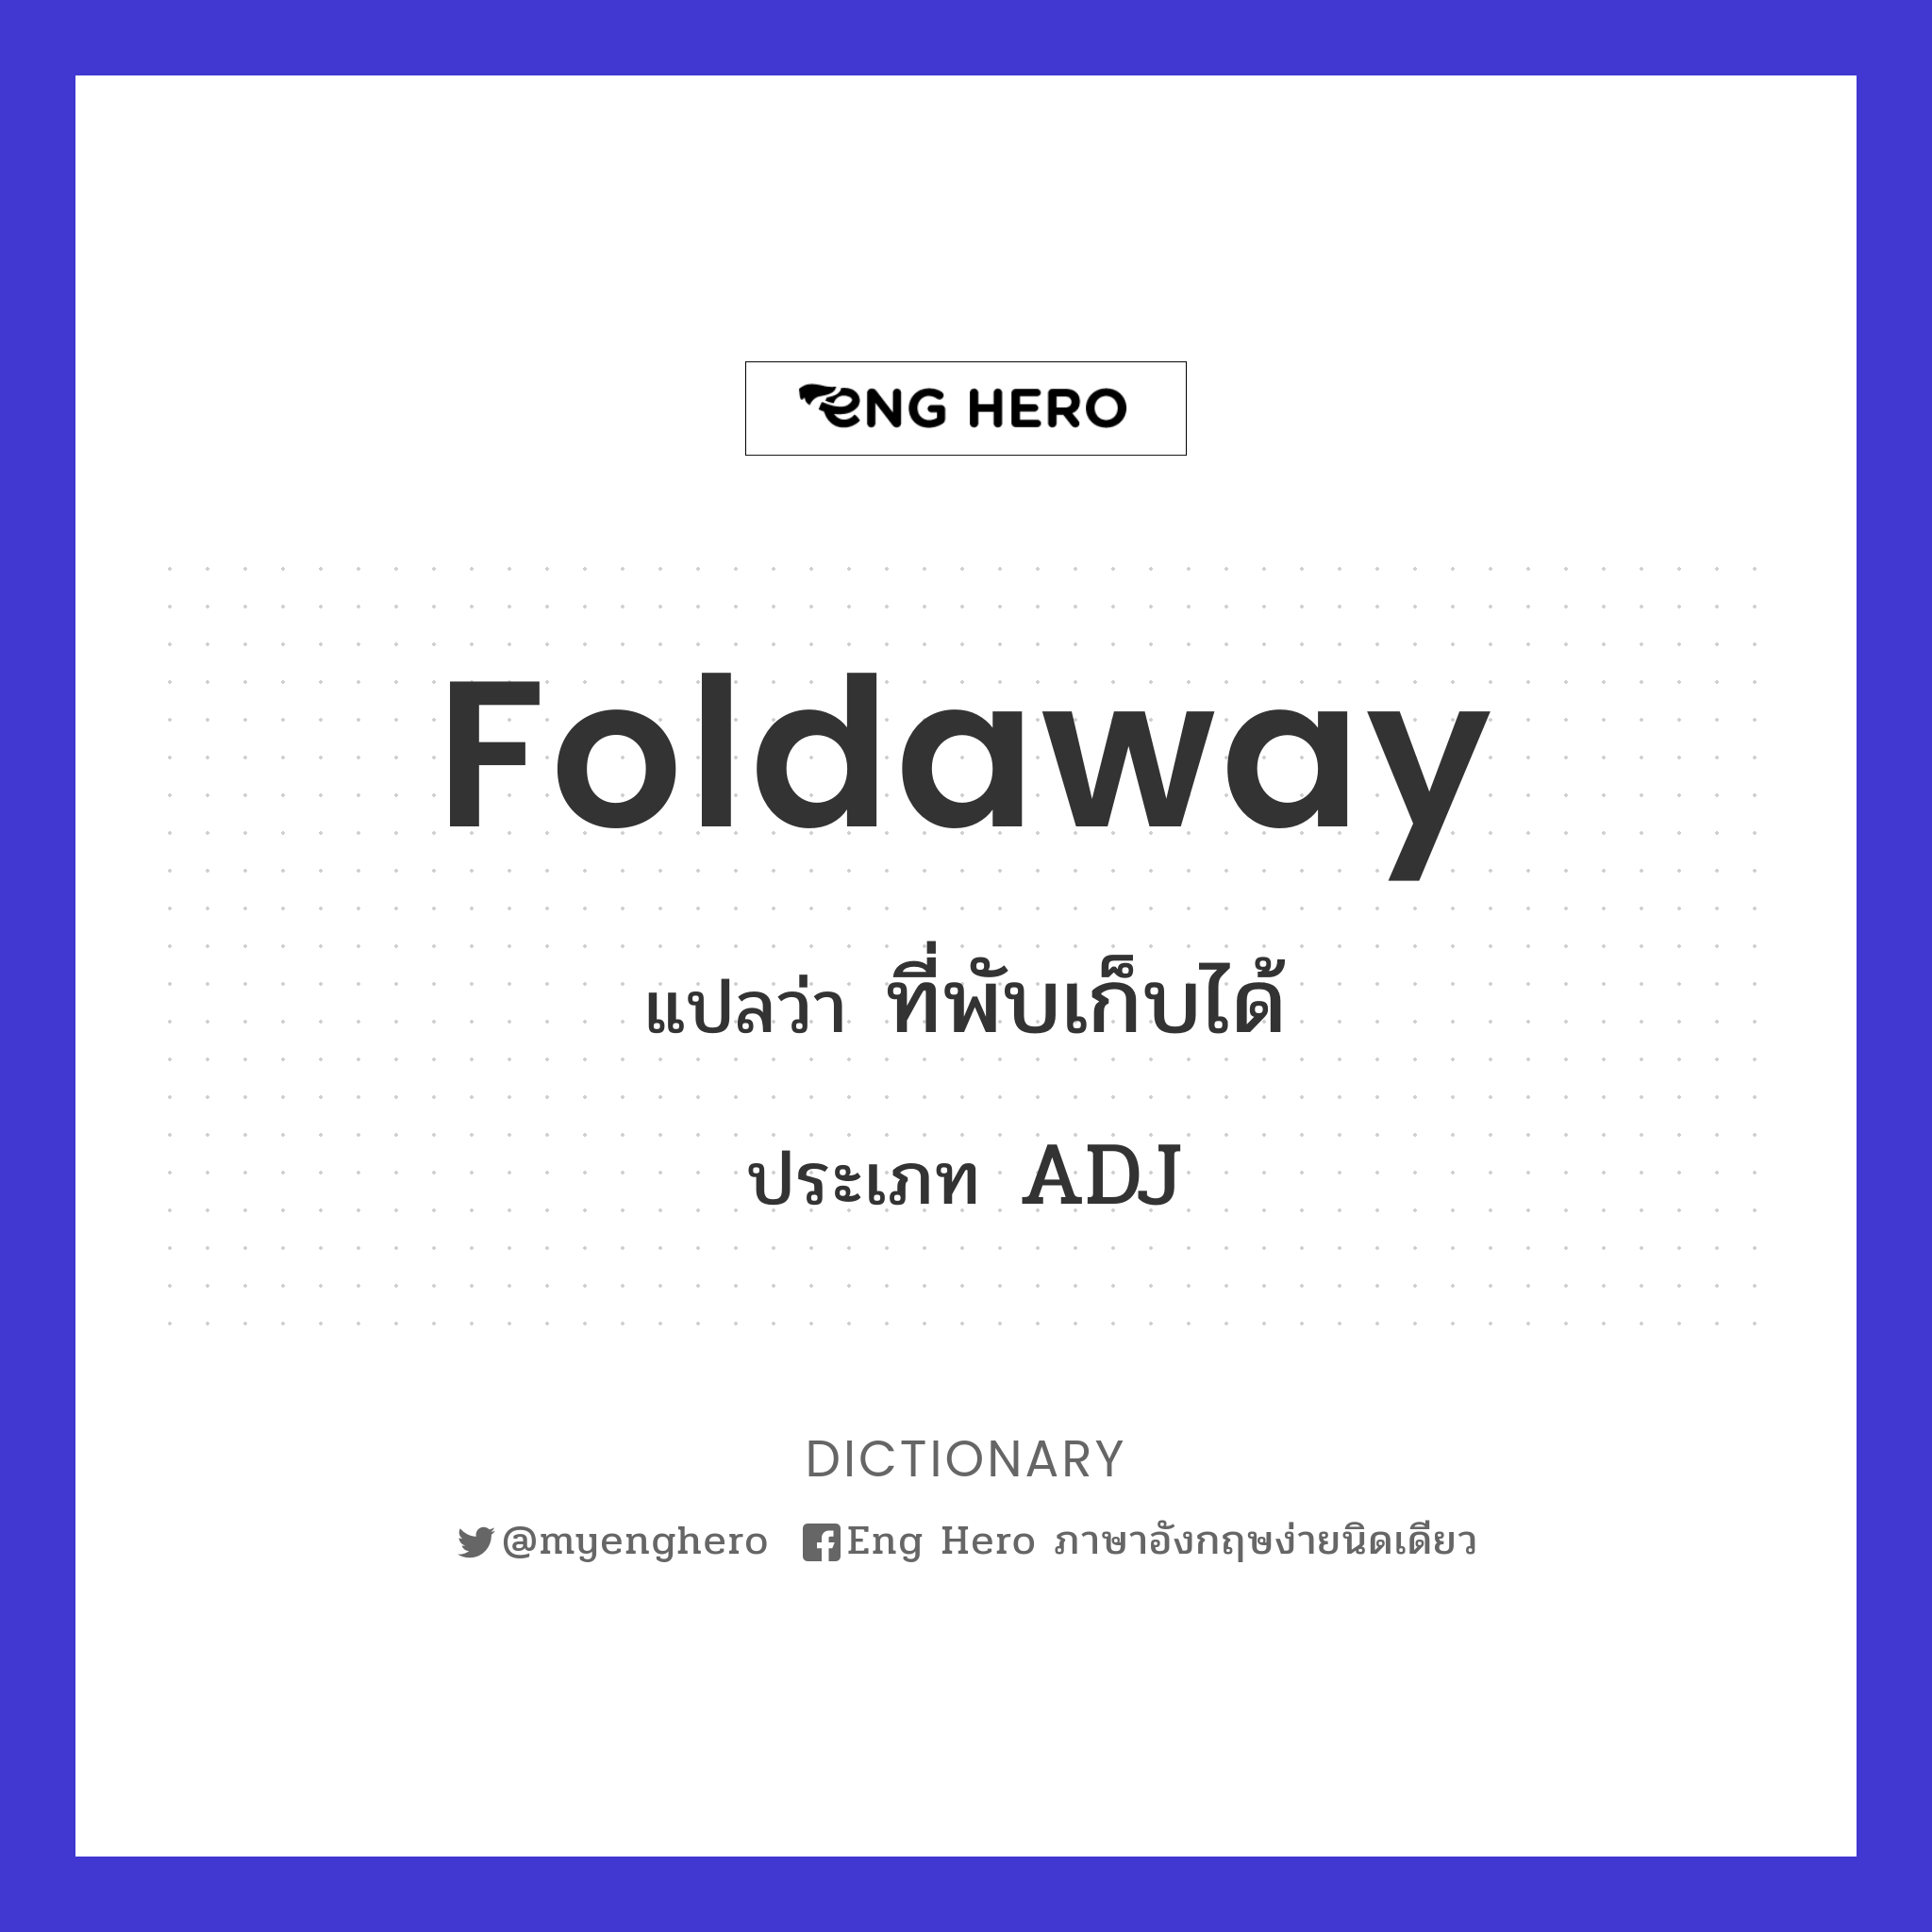 foldaway